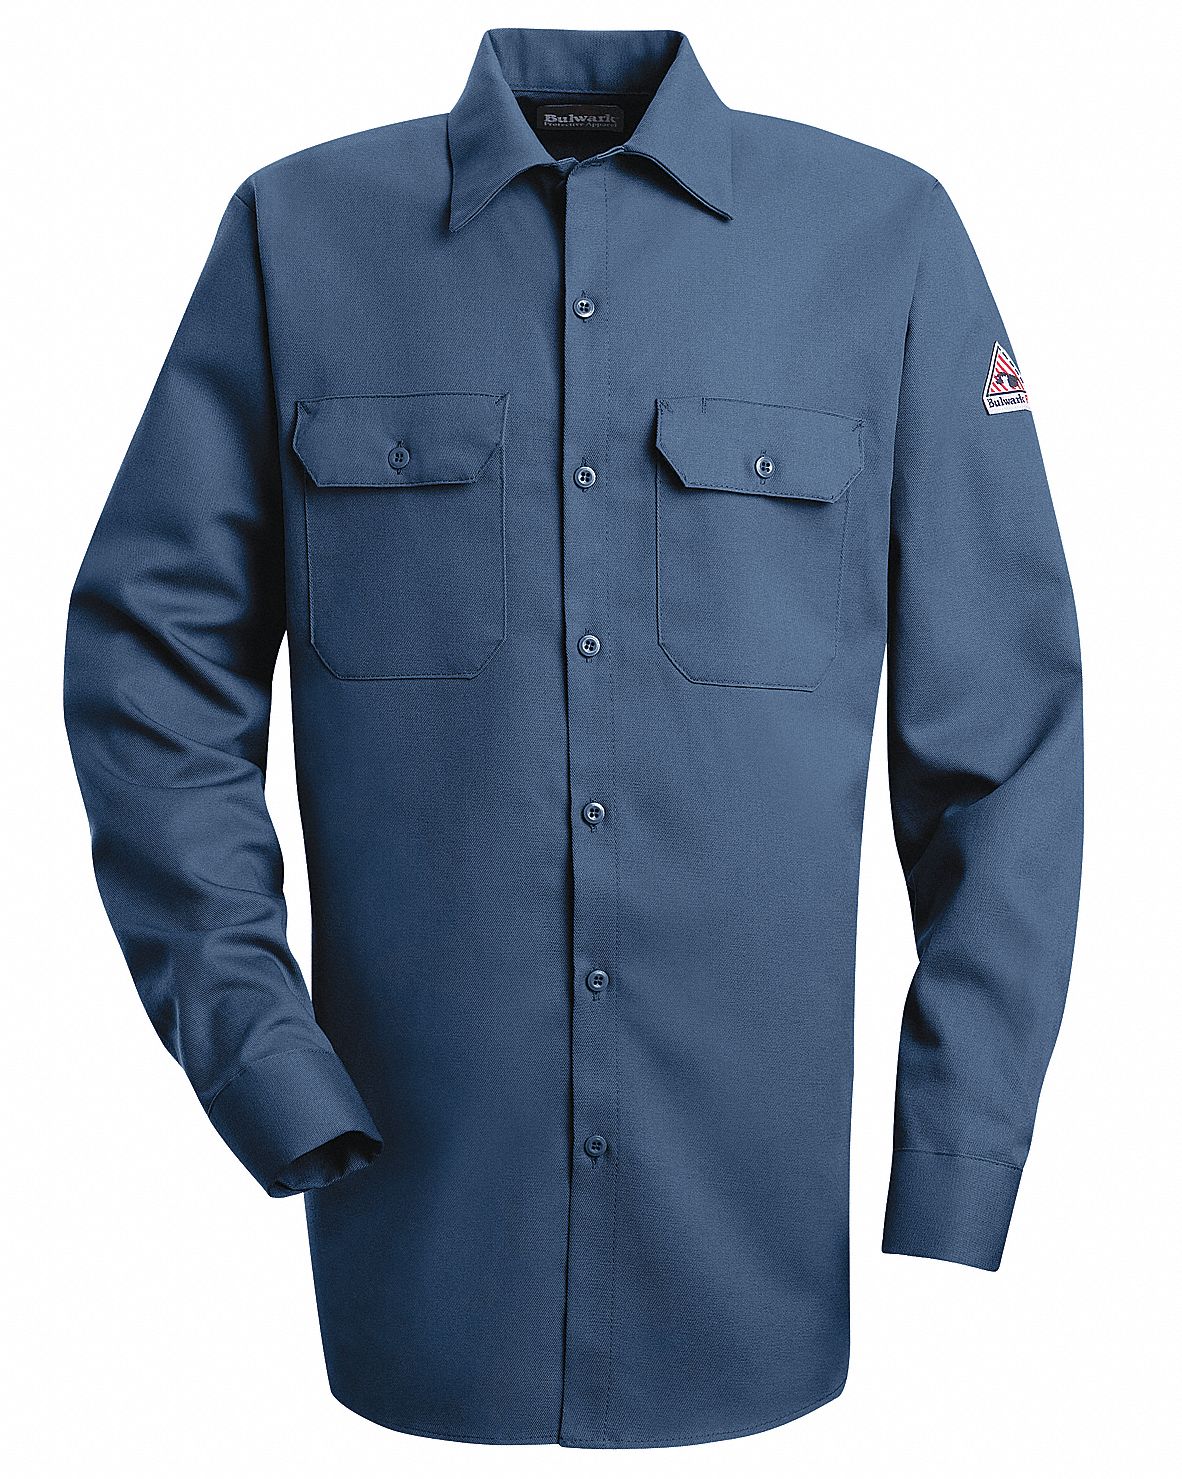 VF IMAGEWEAR Flame-Resistant Collared Shirt: 8.6 cal/sq cm ATPV, Men's ...